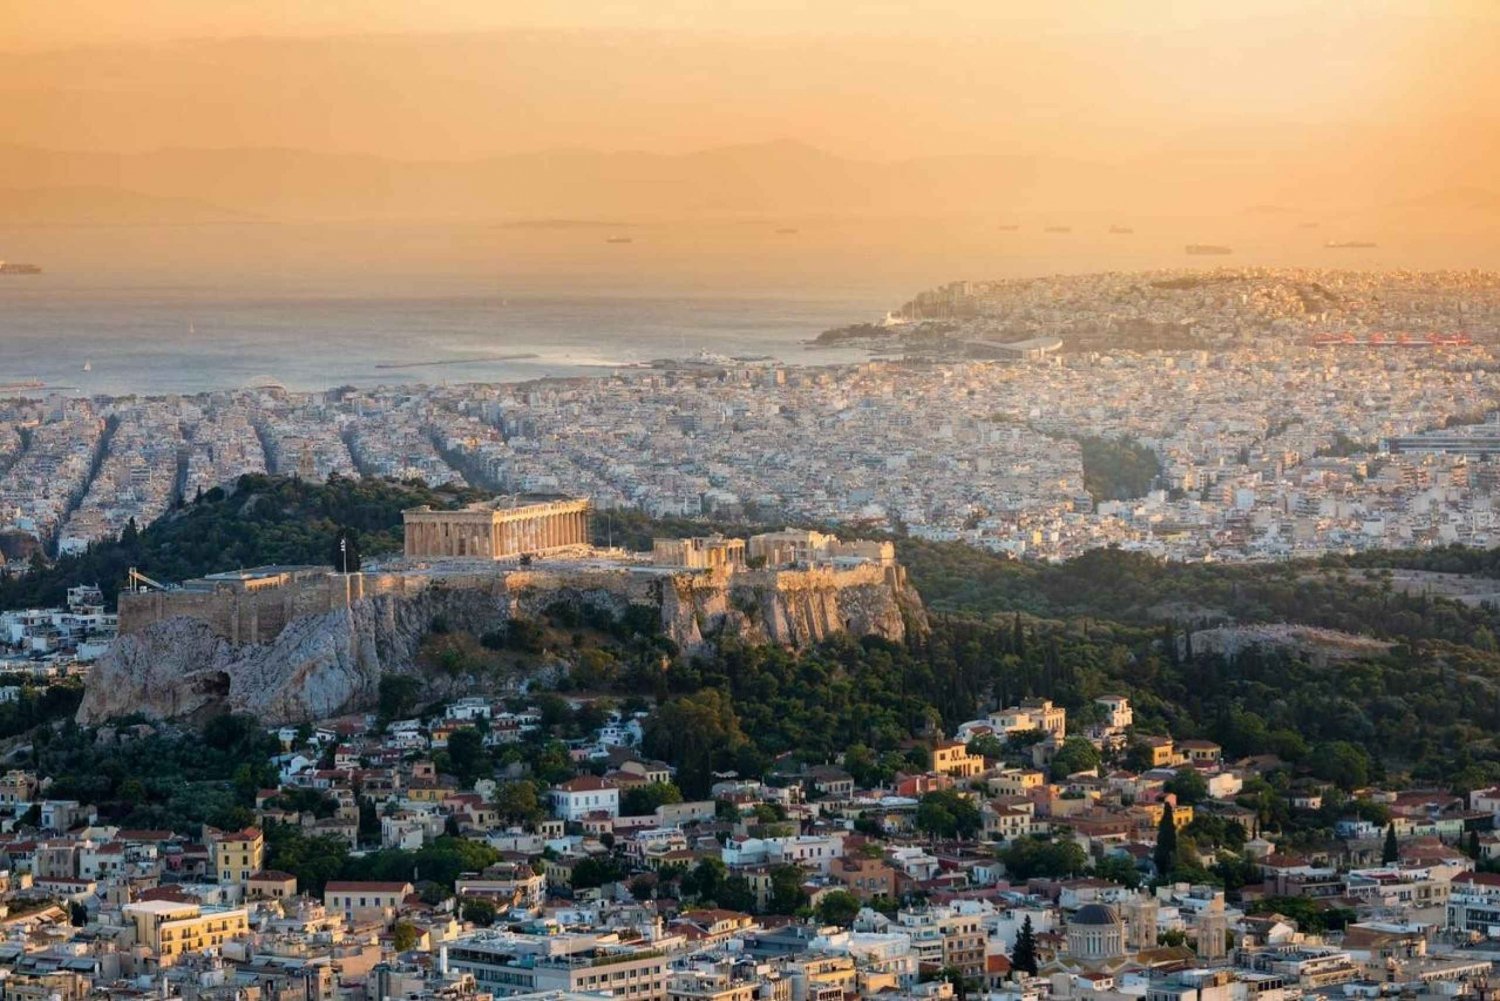 Aten: Akropolis guidad tur på spanska utan biljetter